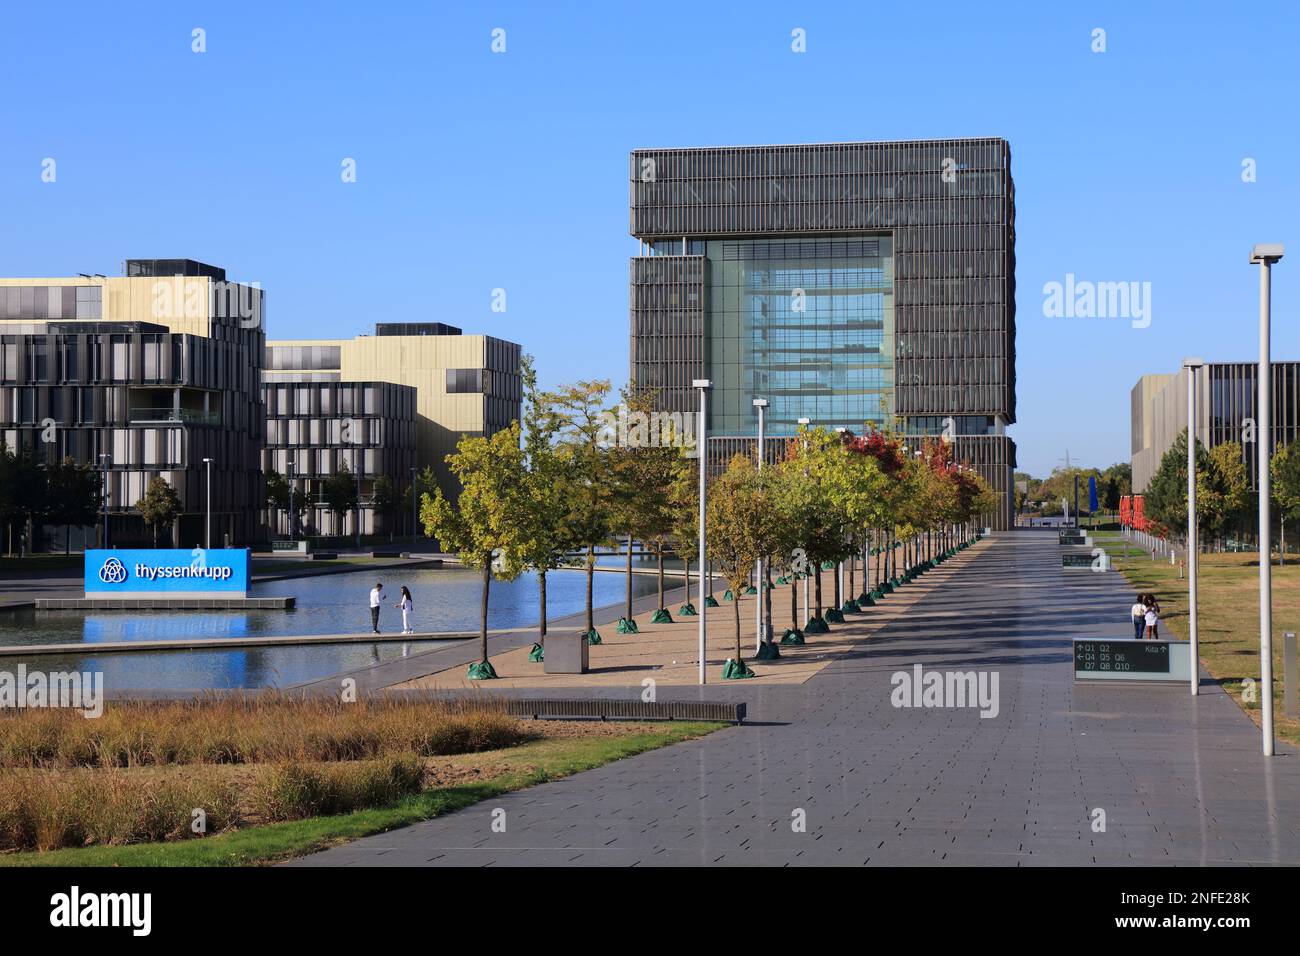 ESSEN, 20. SEPTEMBER 2020: Thyssenkrupp-Firmensitz in Essen, Deutschland. Thyssenkrupp ist ein Industriekonglomerat, einer der größten m Stockfoto